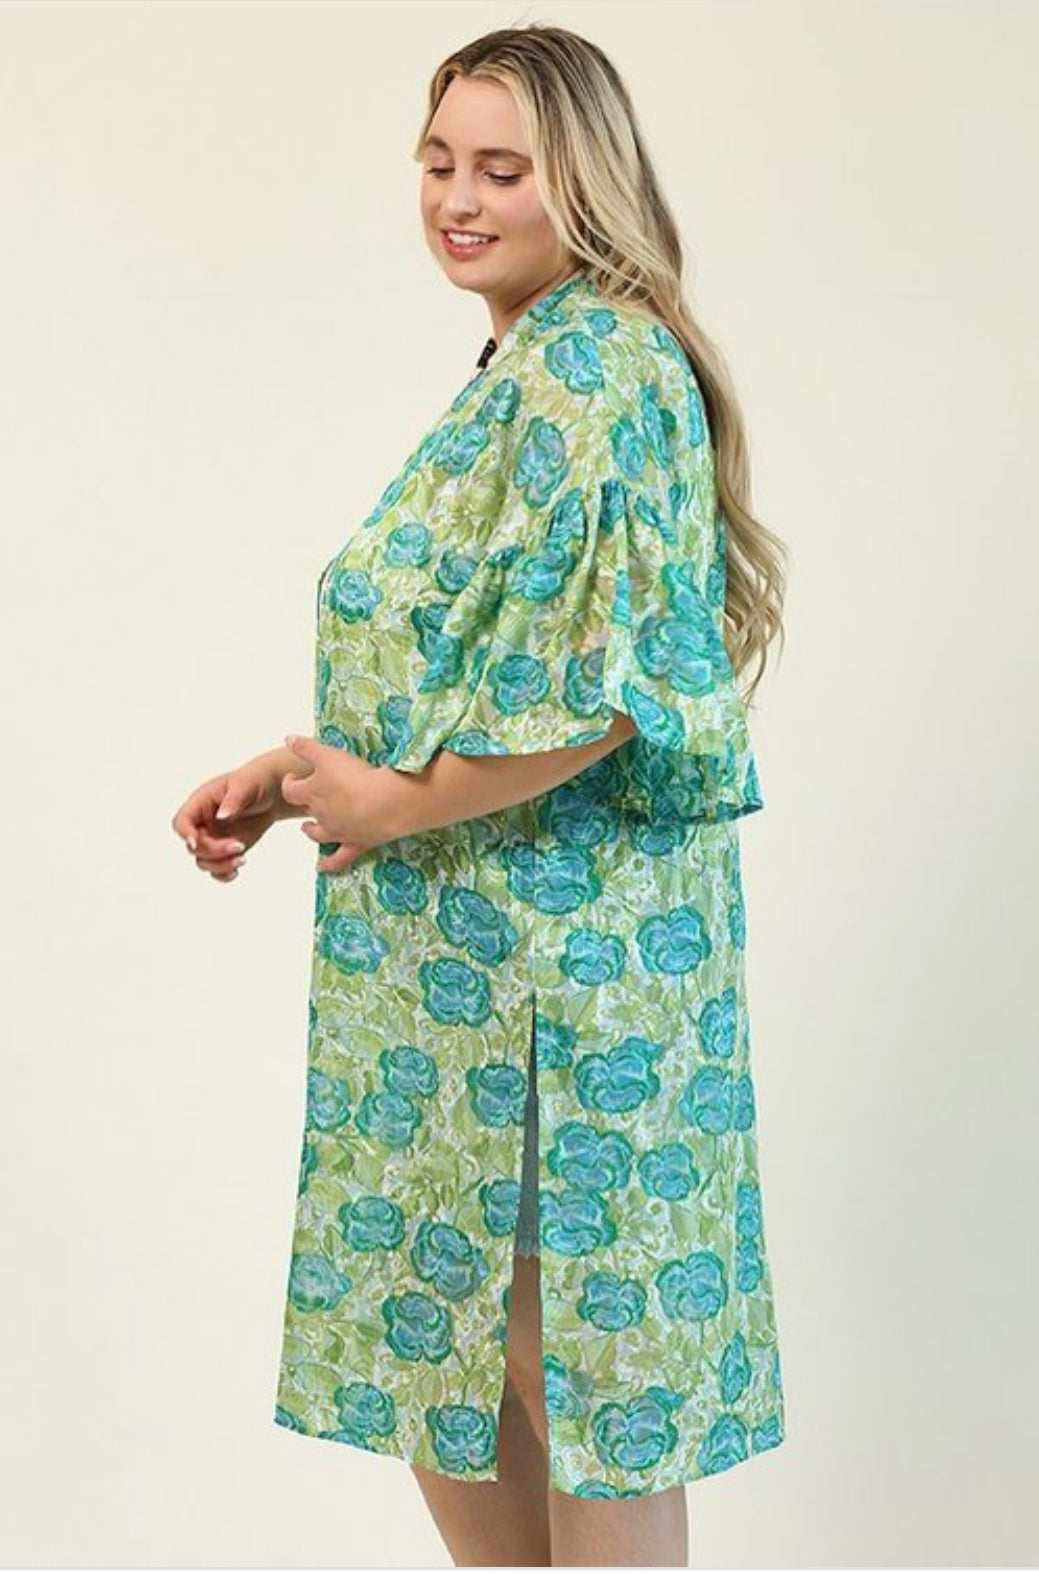 Lizzie Floral Print Kimono Plus